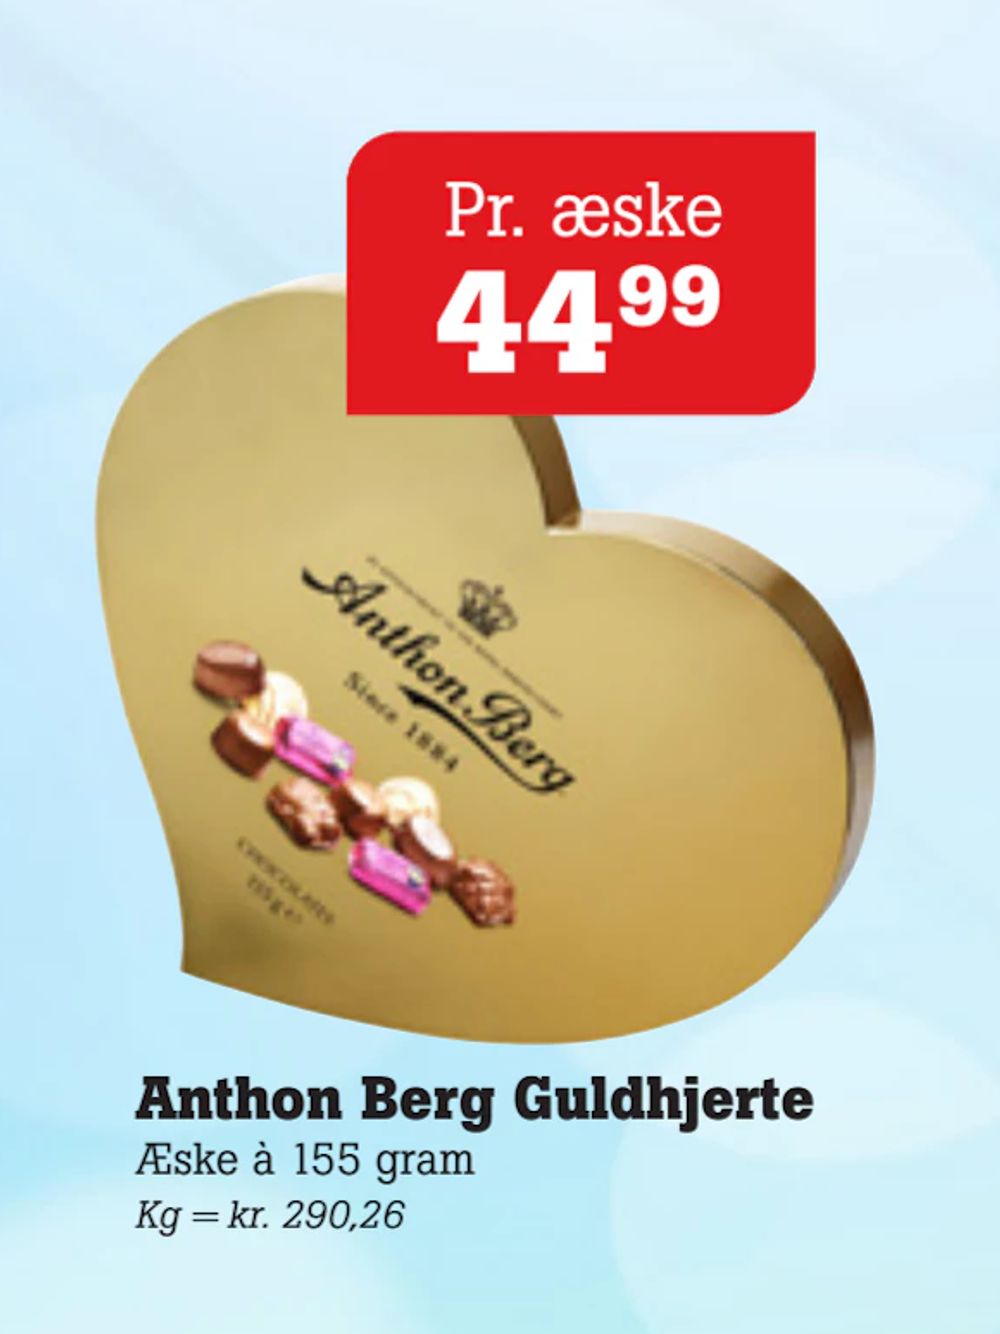 Tilbud på Anthon Berg Guldhjerte fra Poetzsch Padborg til 44,99 kr.